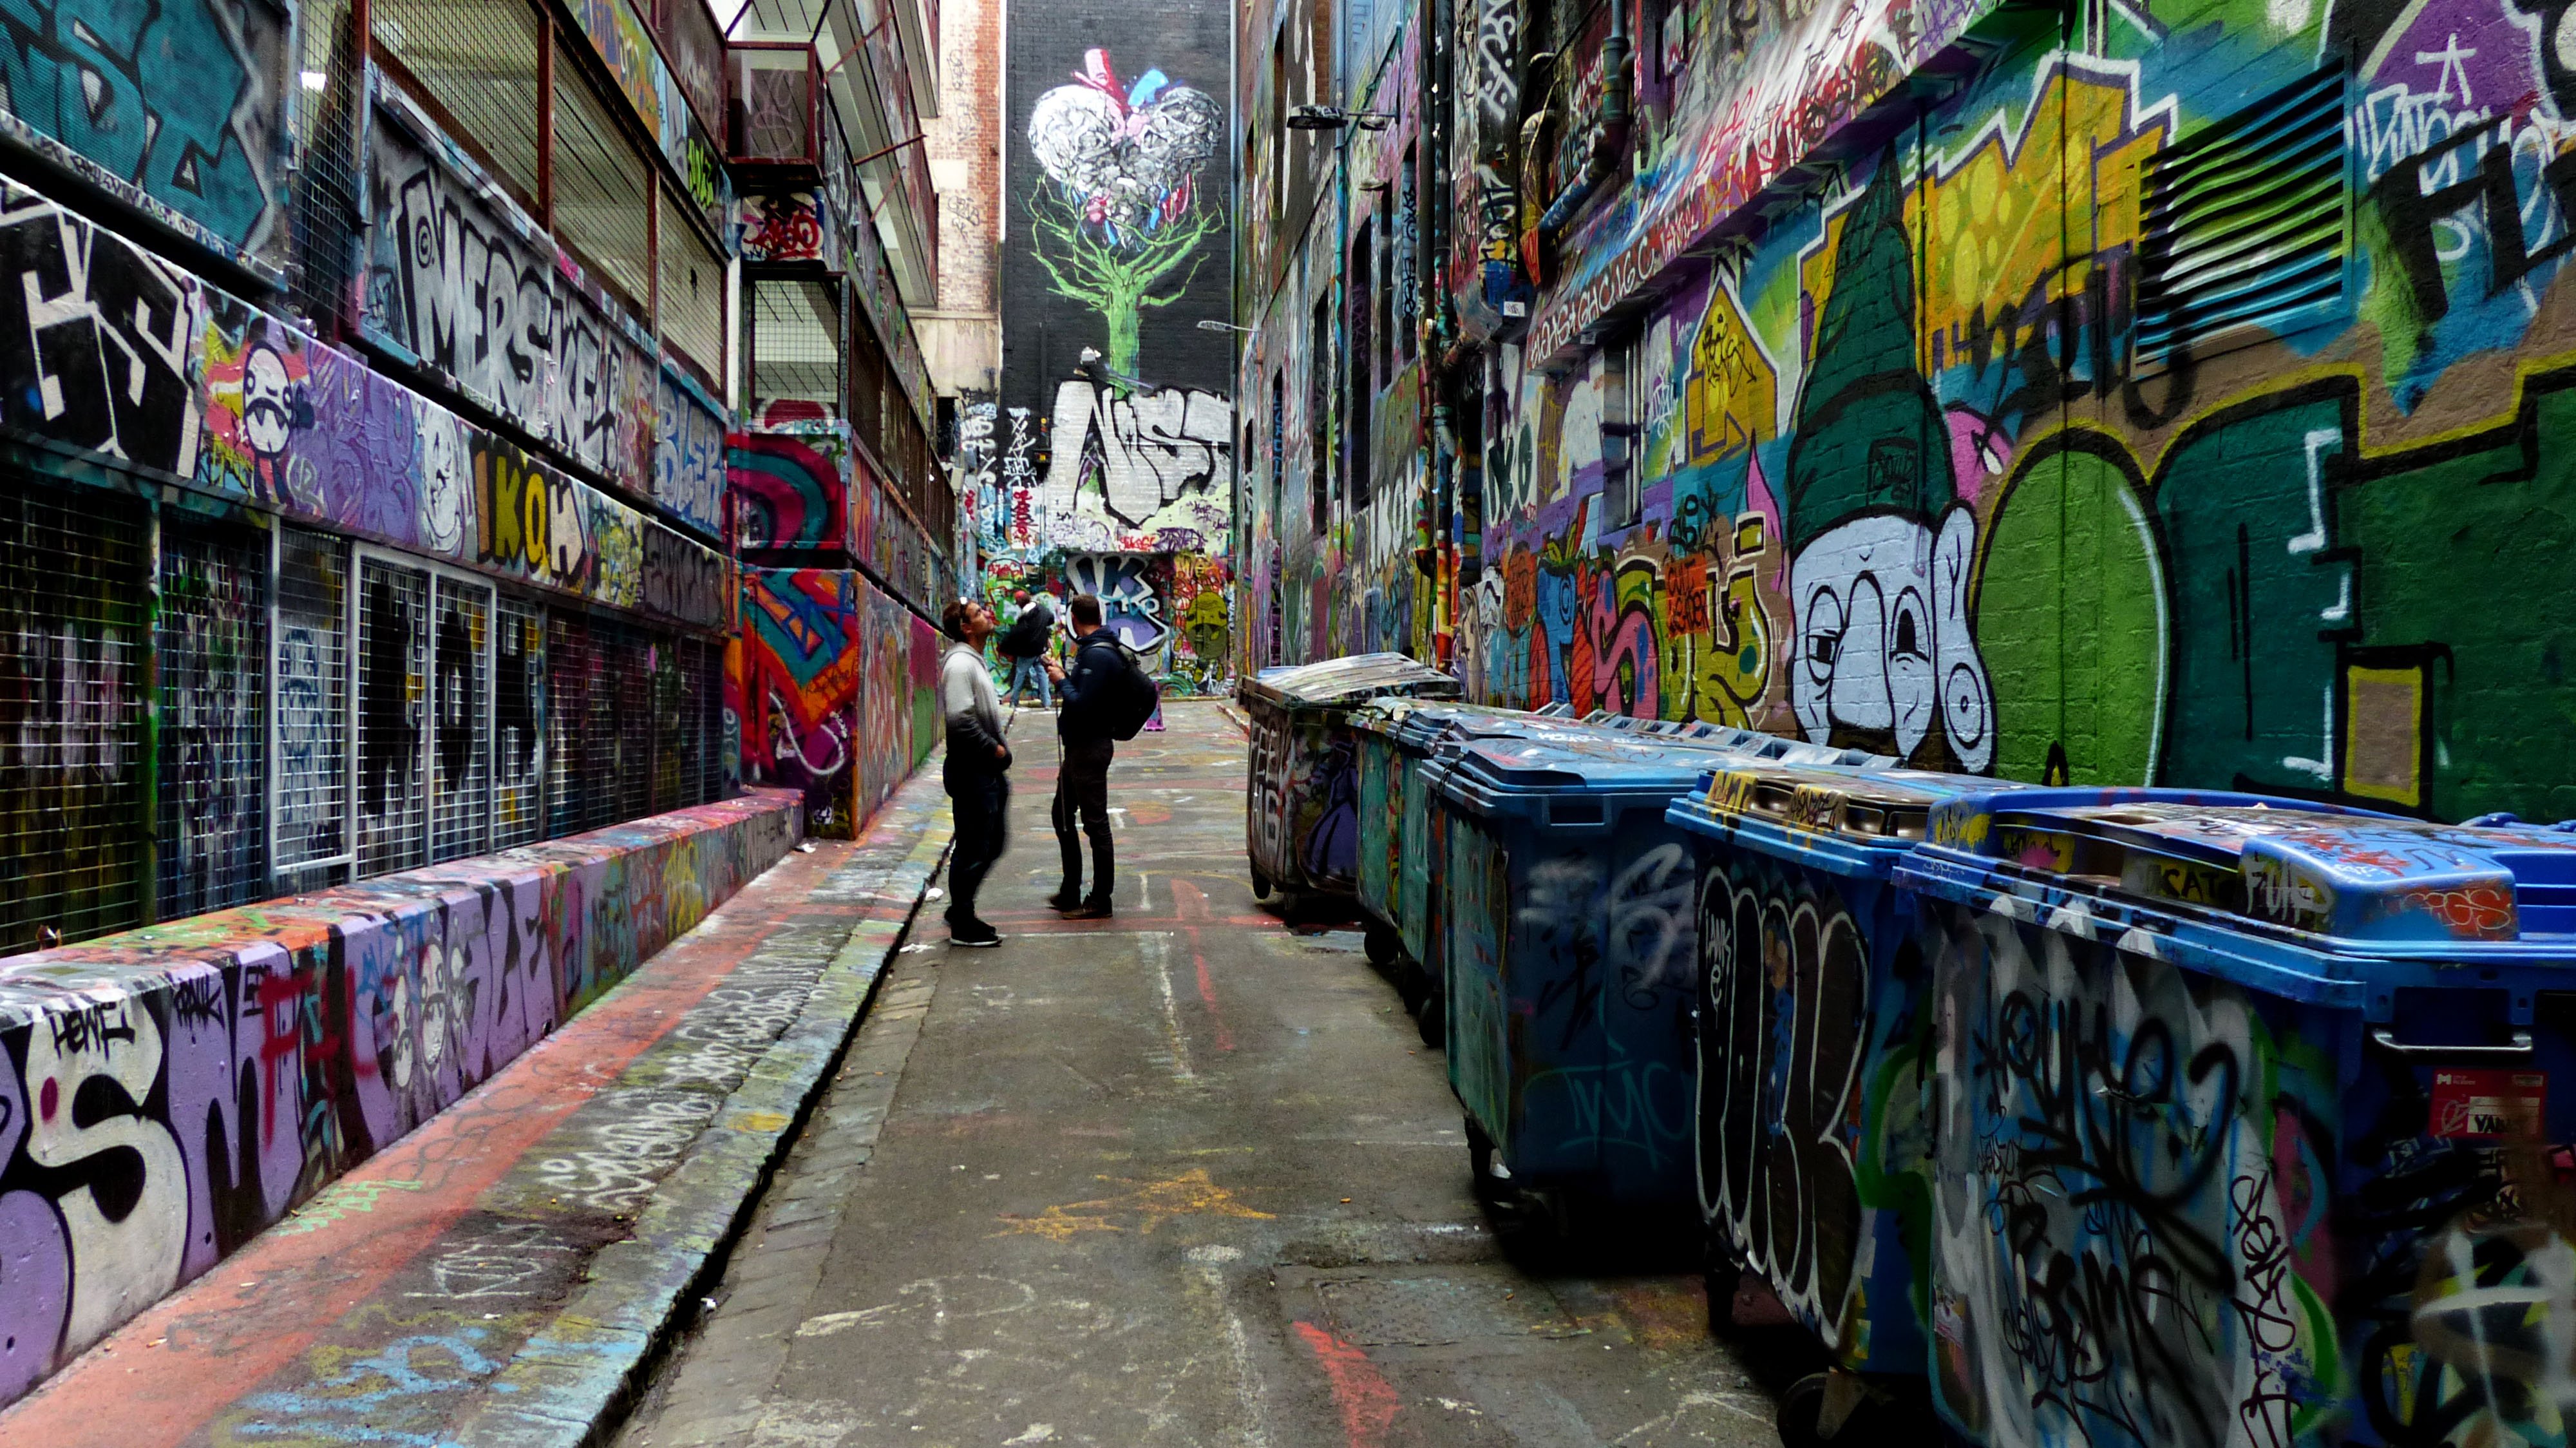 Melbourne-Hosier-Lane-Street-Art-Melbourne-Graffiti